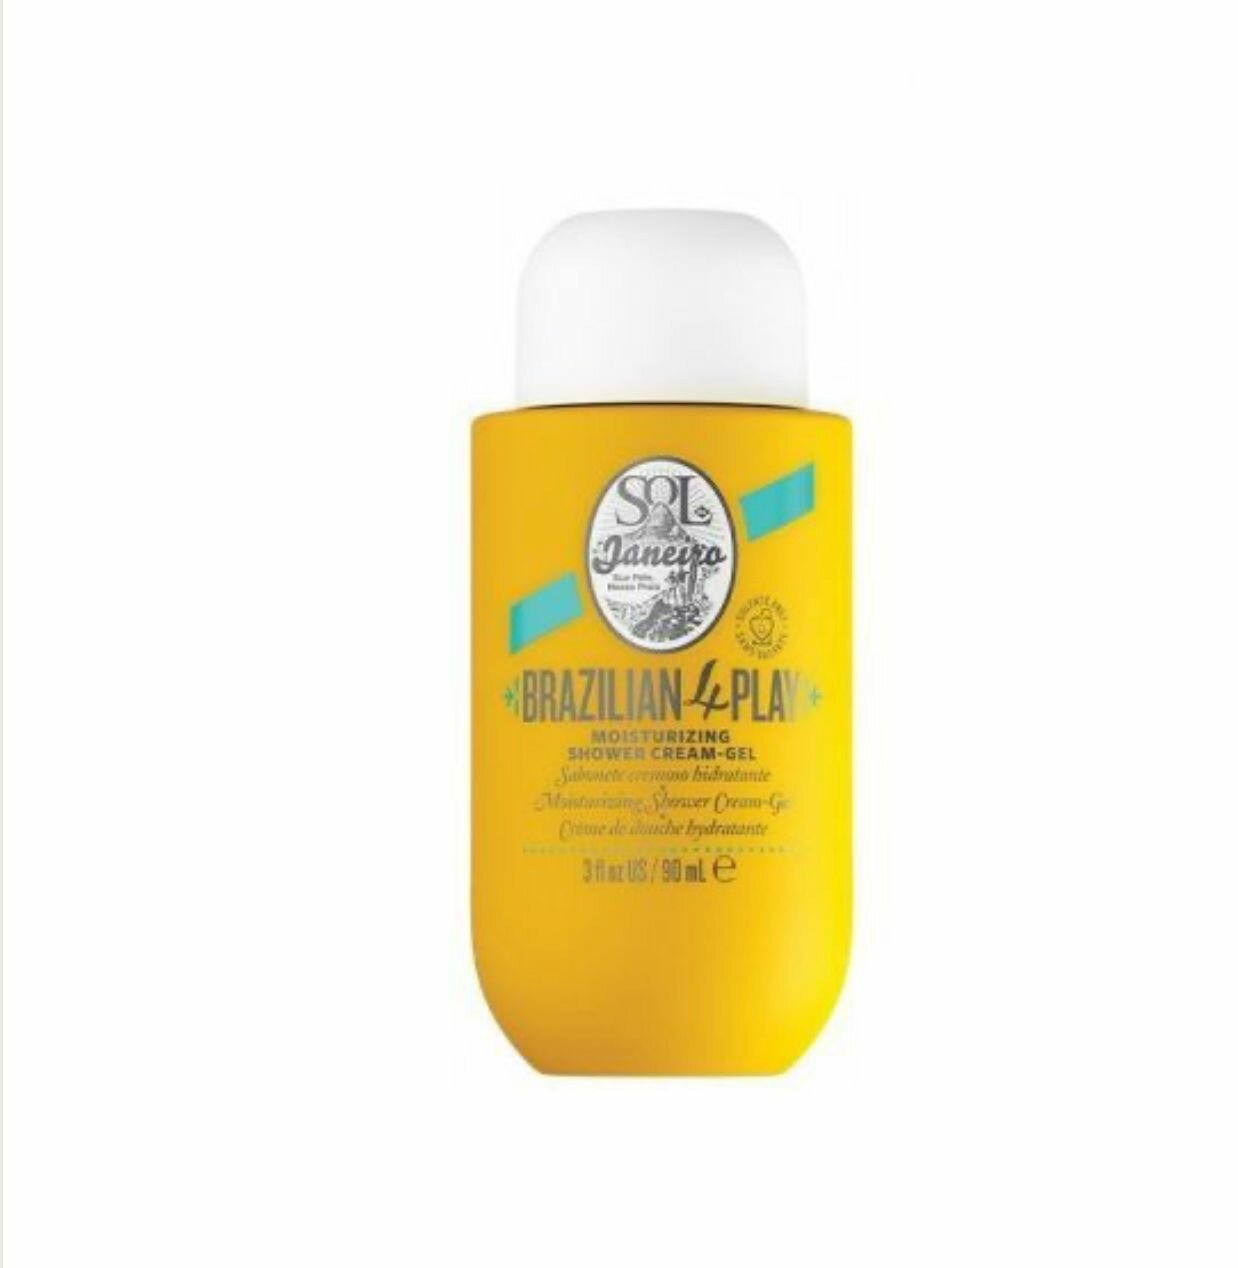 Sol de Janeiro Крем-гель для душа Brazilian 4-Play Shower Cream Gel Bum Bum, 90ml